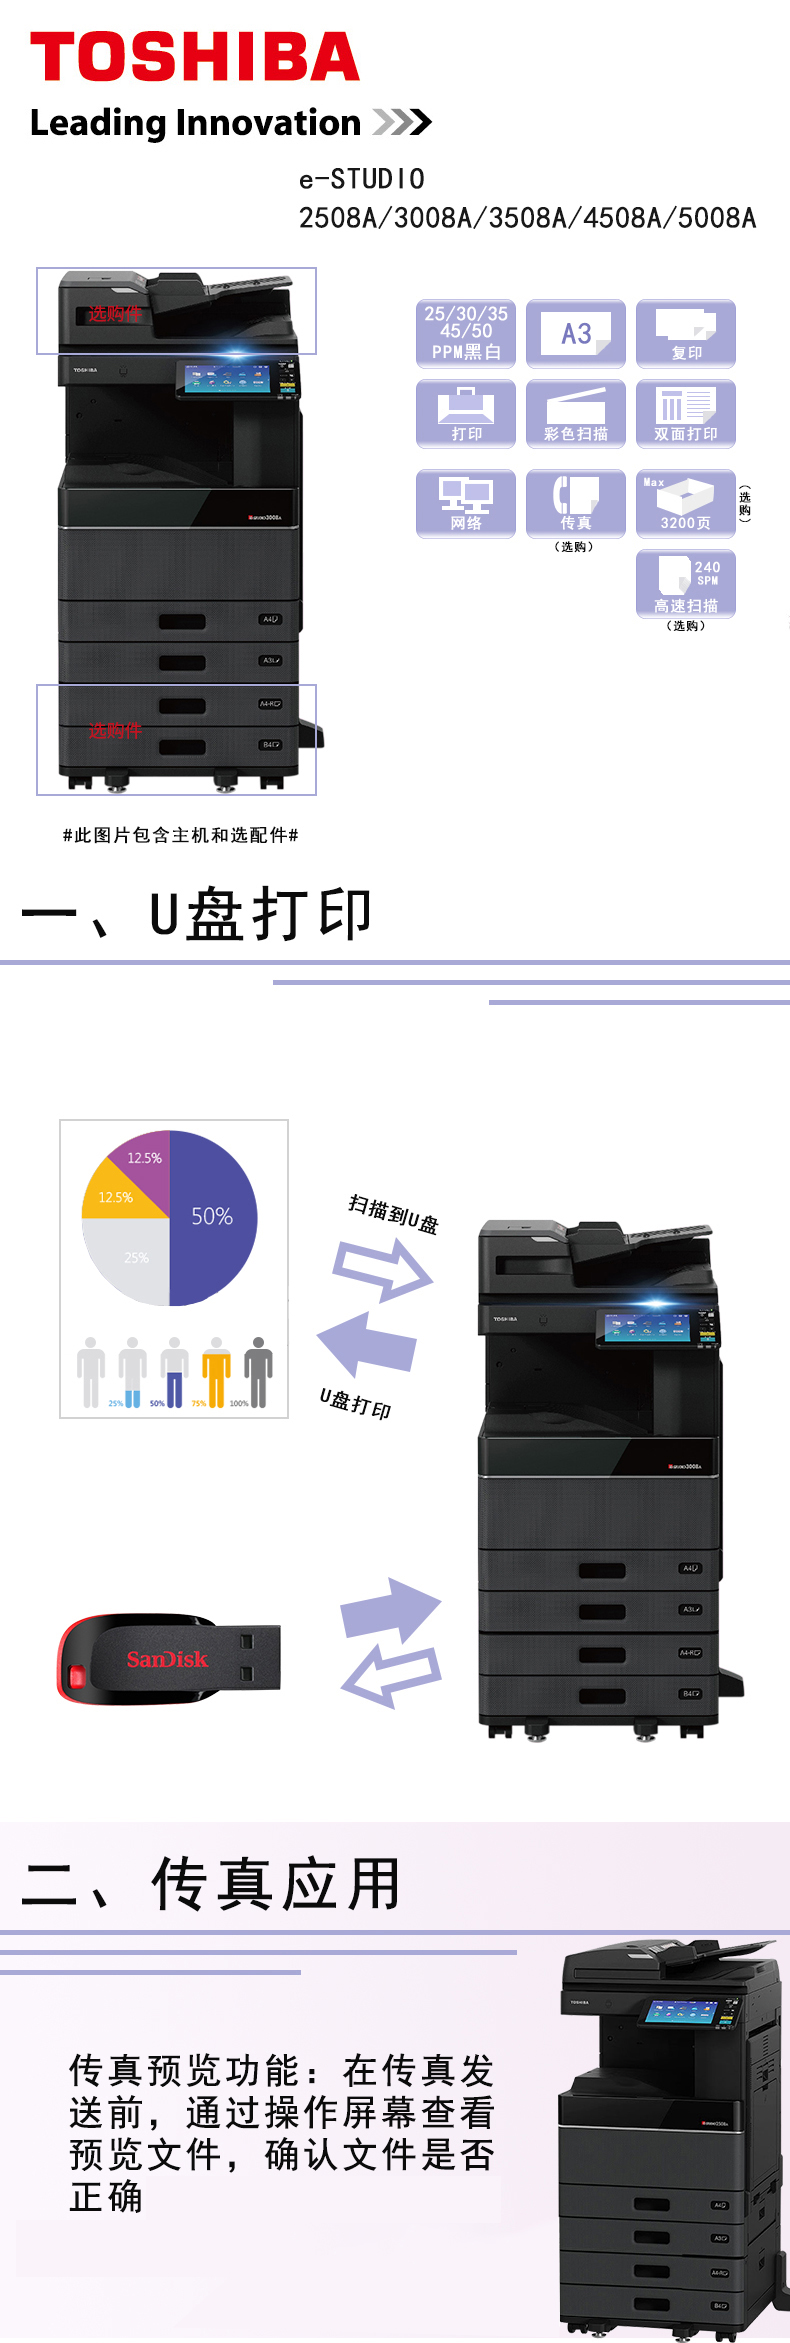 东芝 Toshiba 复印机a3 激光黑白数码复合机多功能打印一体机复印机打印复印扫描3018a标配双层纸盒 北京华赢天成科技有限公司